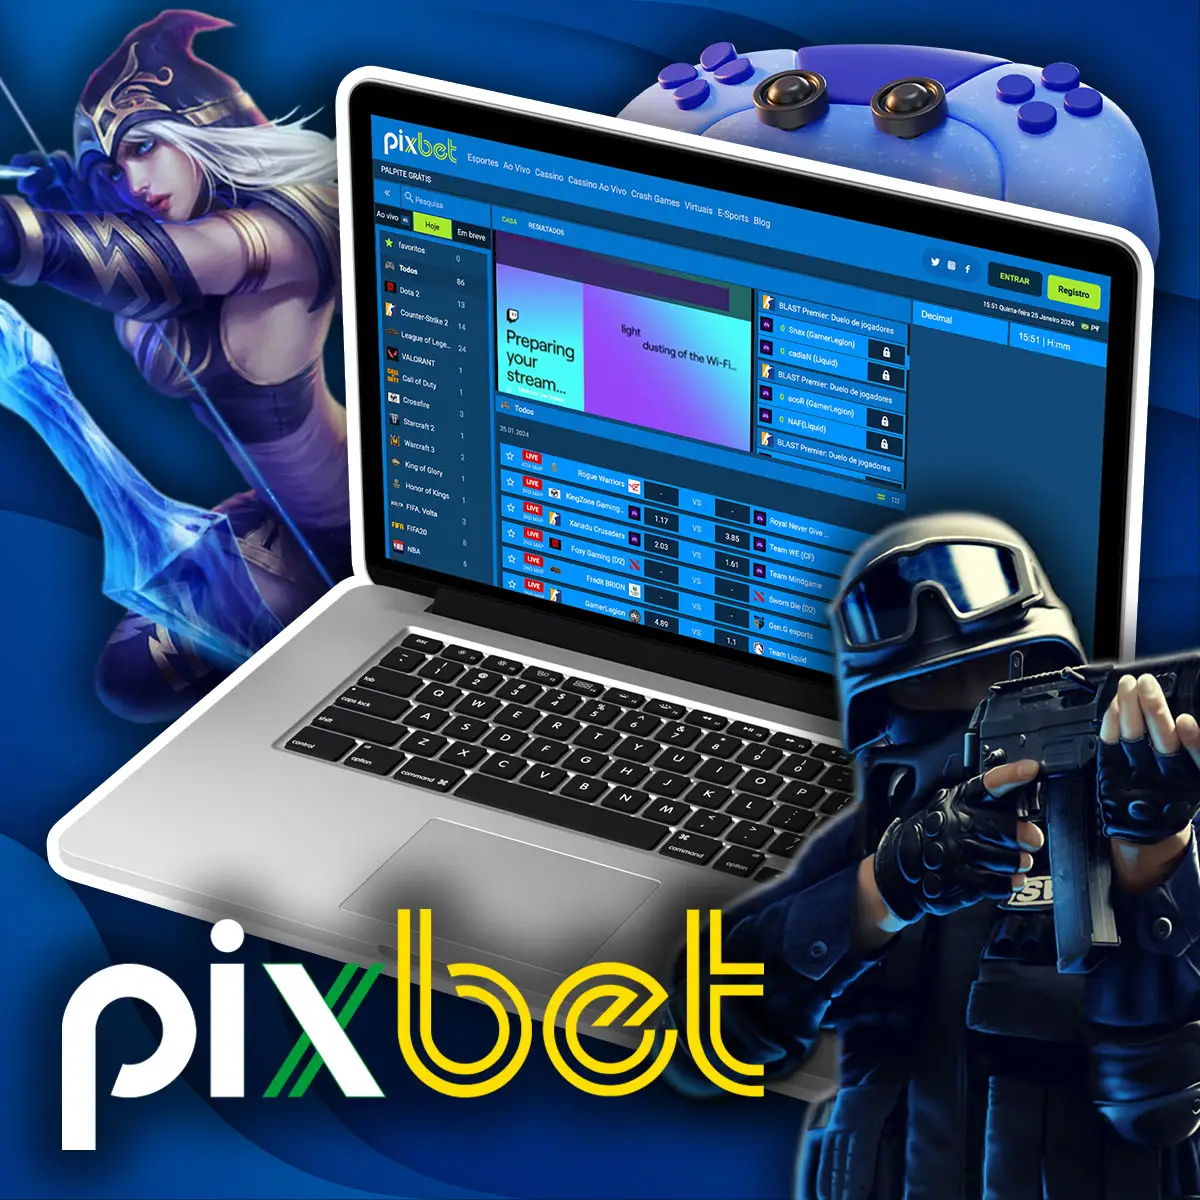 Os seguintes tipos de apostas estão disponíveis no Pixbet e-Sports